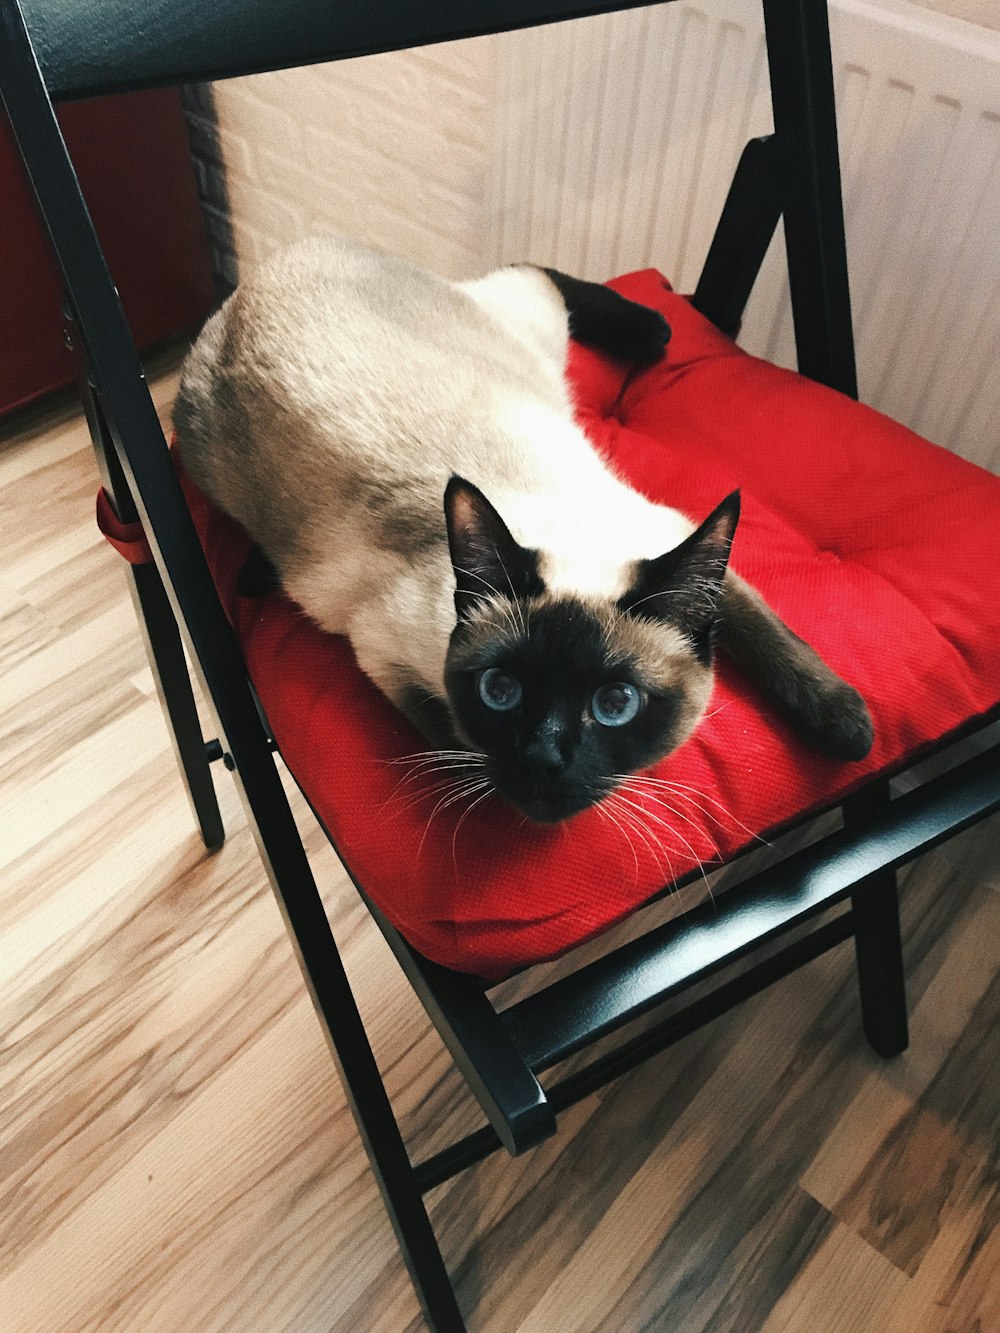 gatto siamese su sedia rossa e nera